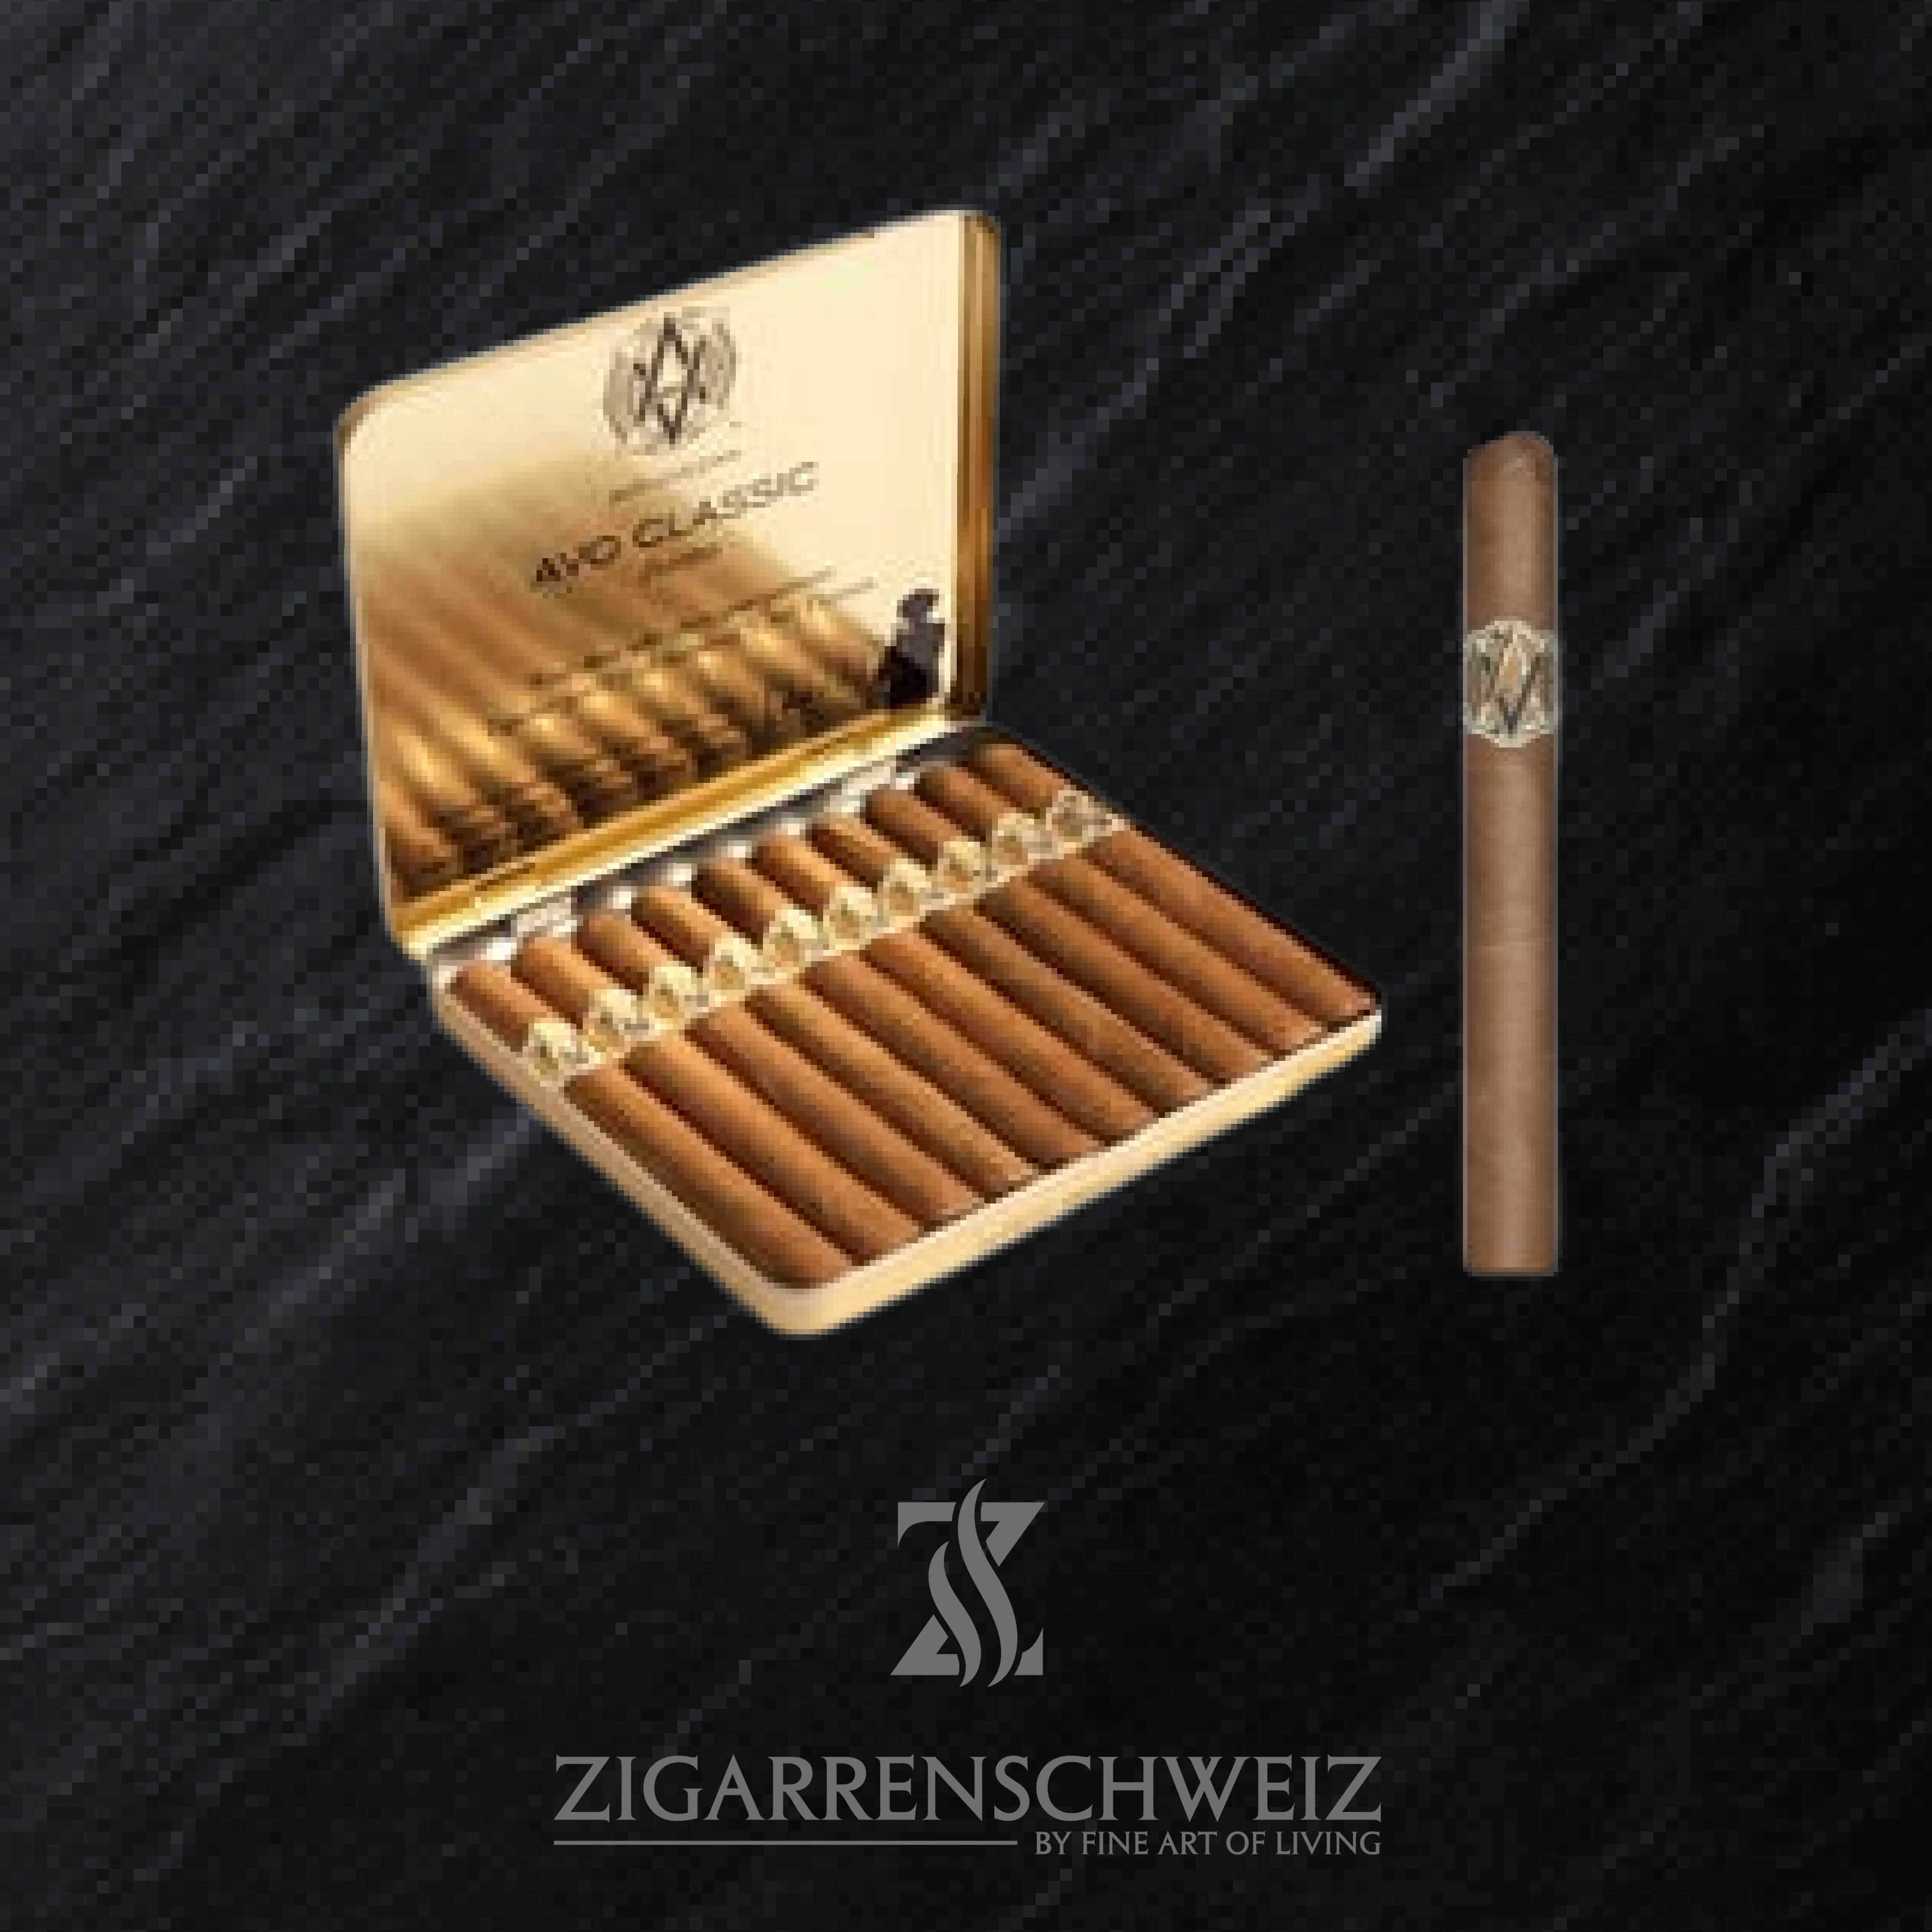 AVO Classic Puritos Zigarren in der offenen Blech Schachtel